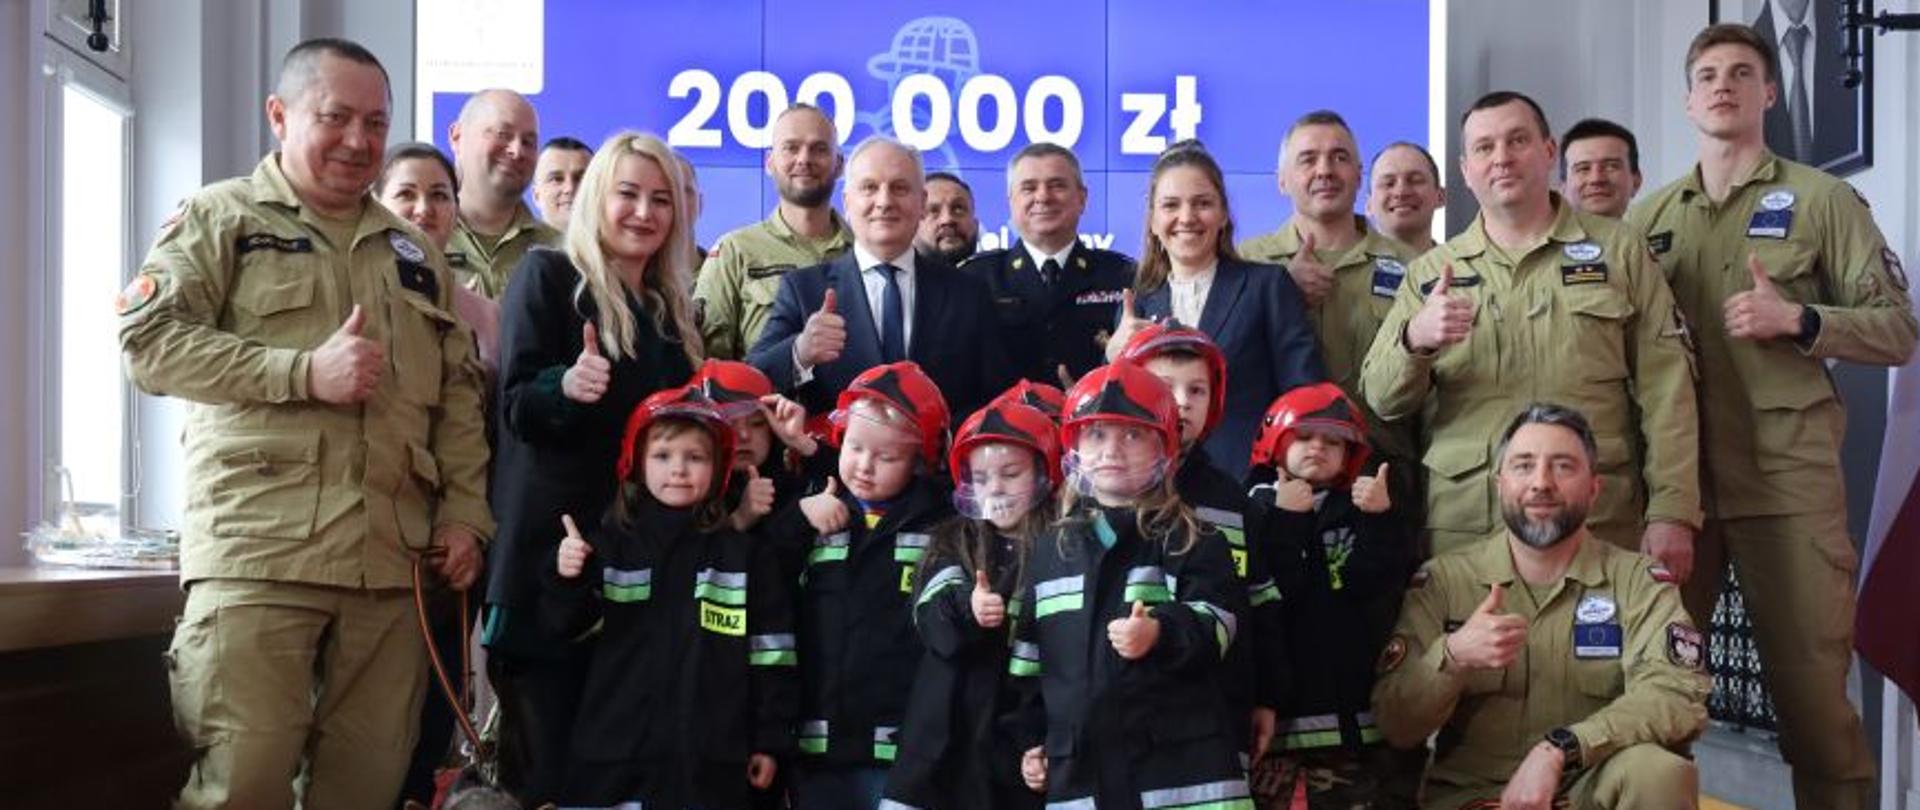 Strażacy dzieci oraz osoby cywilne stoją obok siebie wspólnie z dwoma psami za nimi na ekranie rzutnika wyświetlana jest kwota dwieście tysięcy złotych.